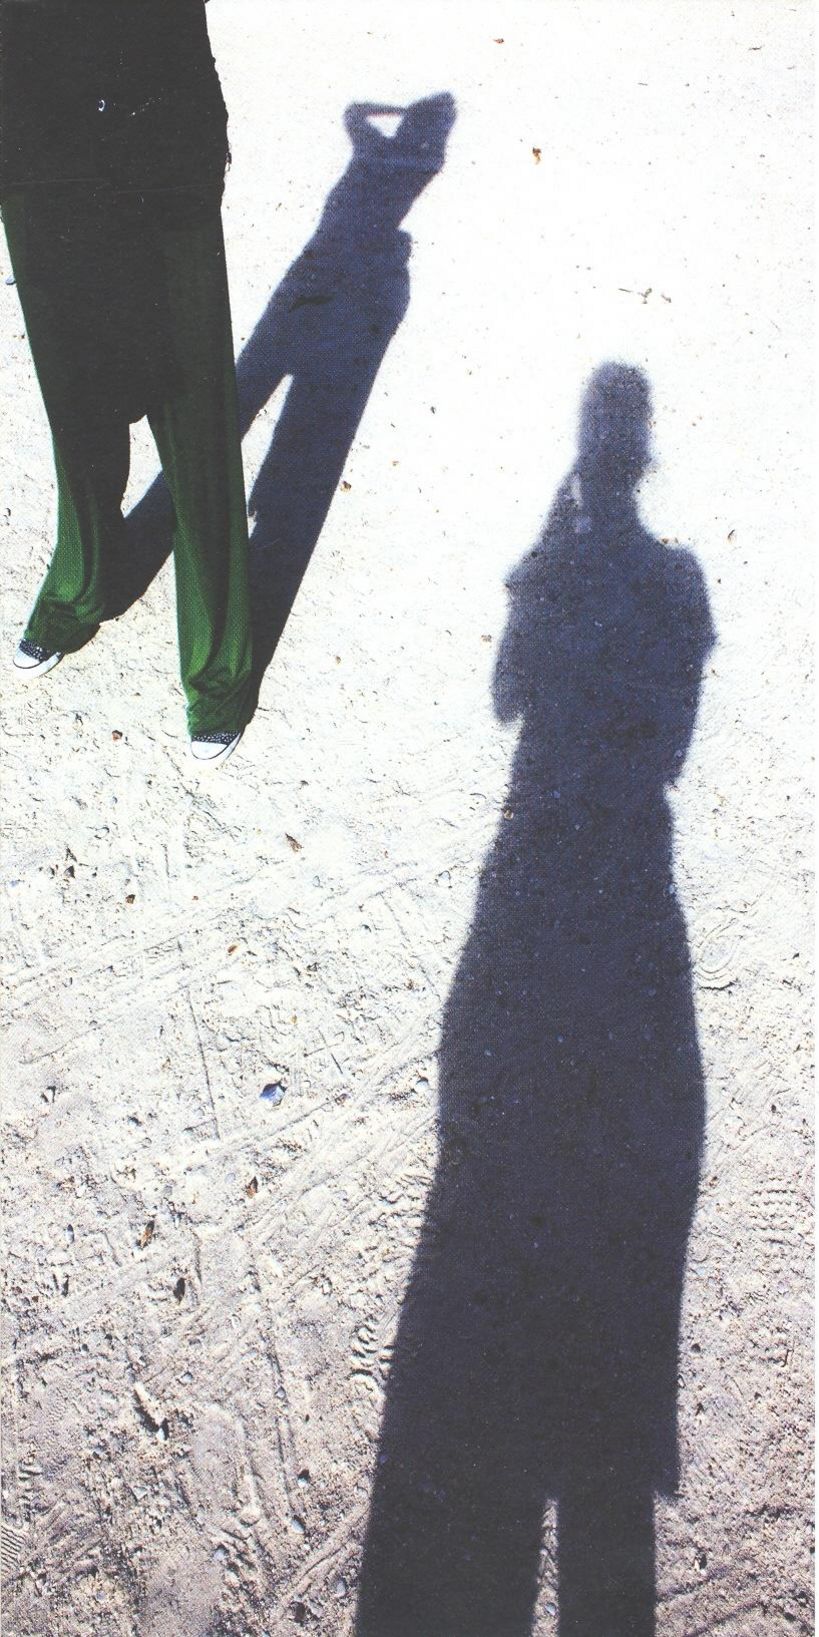 Schattenbilder. Ausstellung von Arbeiten Studierender; Fotografie Steffi Schmid